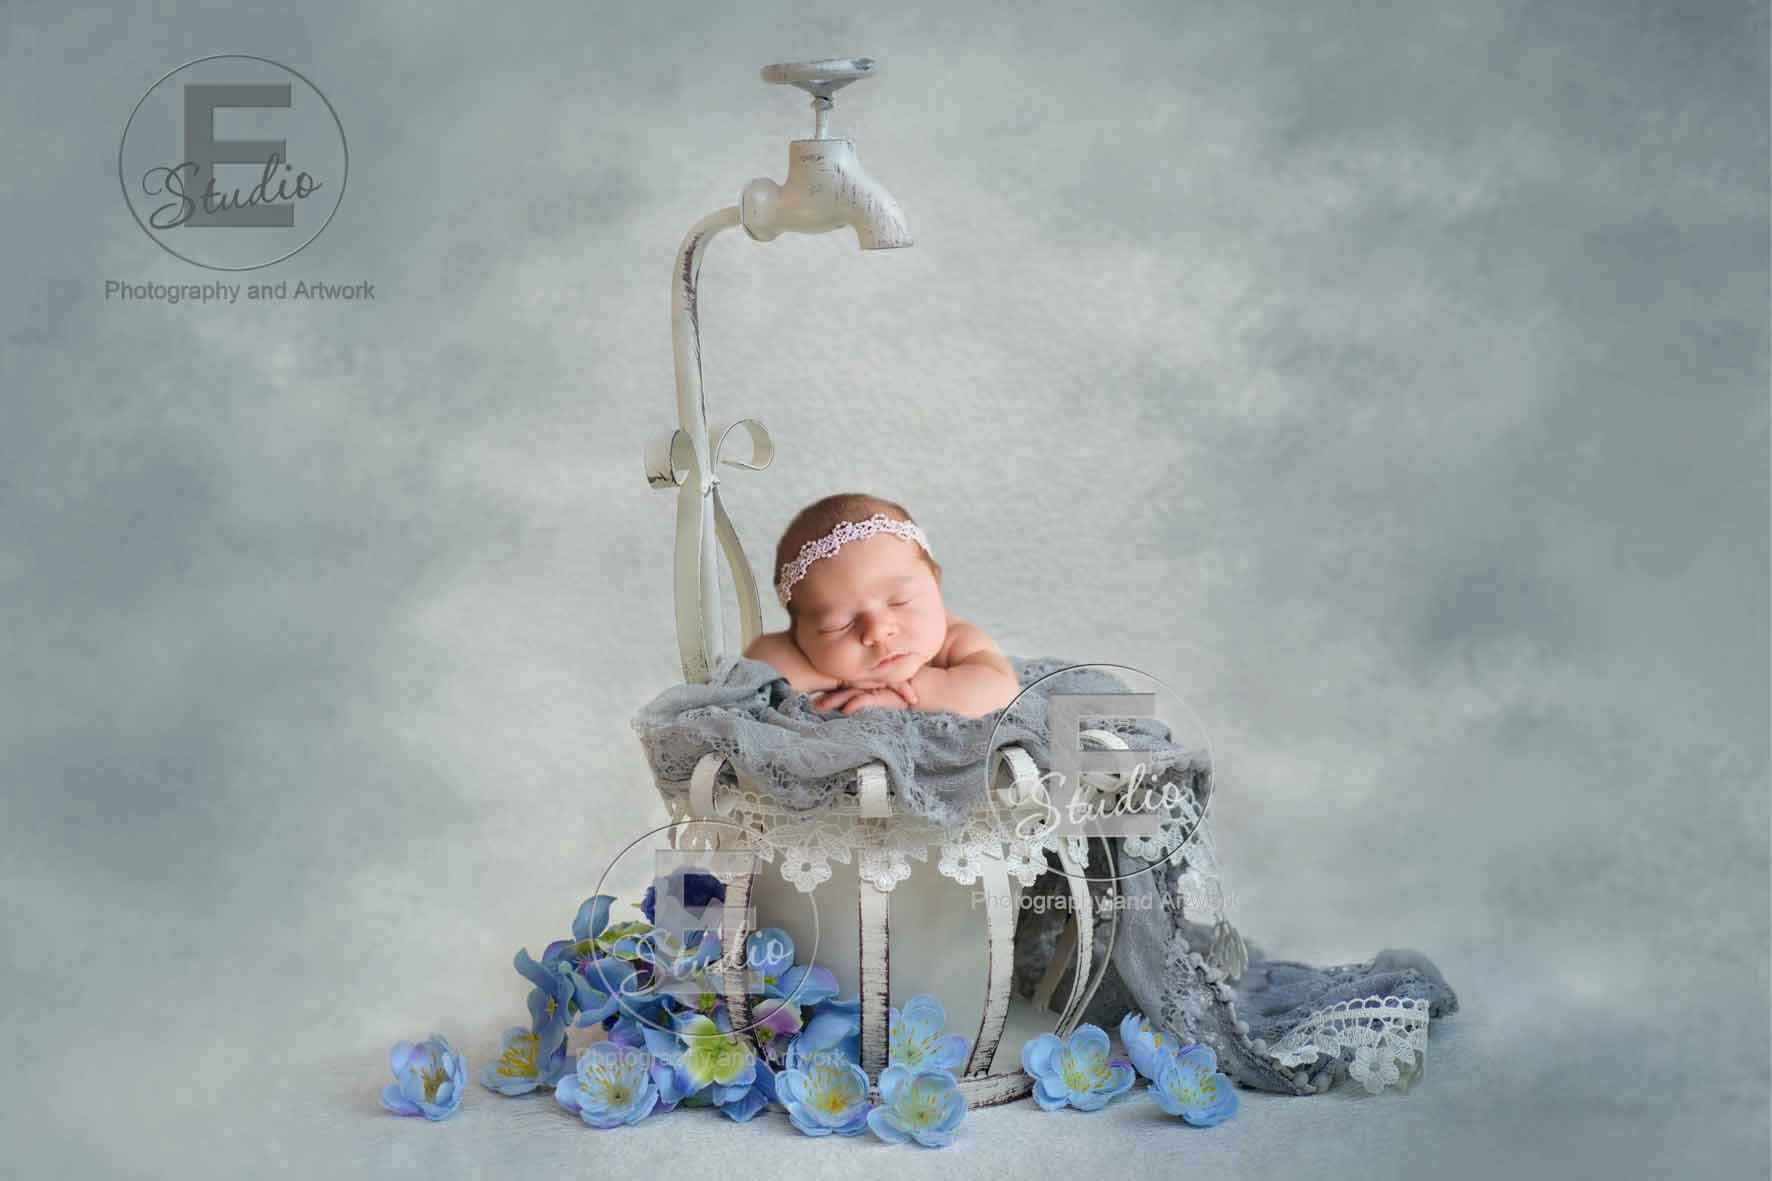 Fondos Fotografia, Azurex 1.5 * 2m telon de fondo fotografico para el bebé  Recién nacido Bebé Animales Objetos Estudio de Foto : : Electrónica